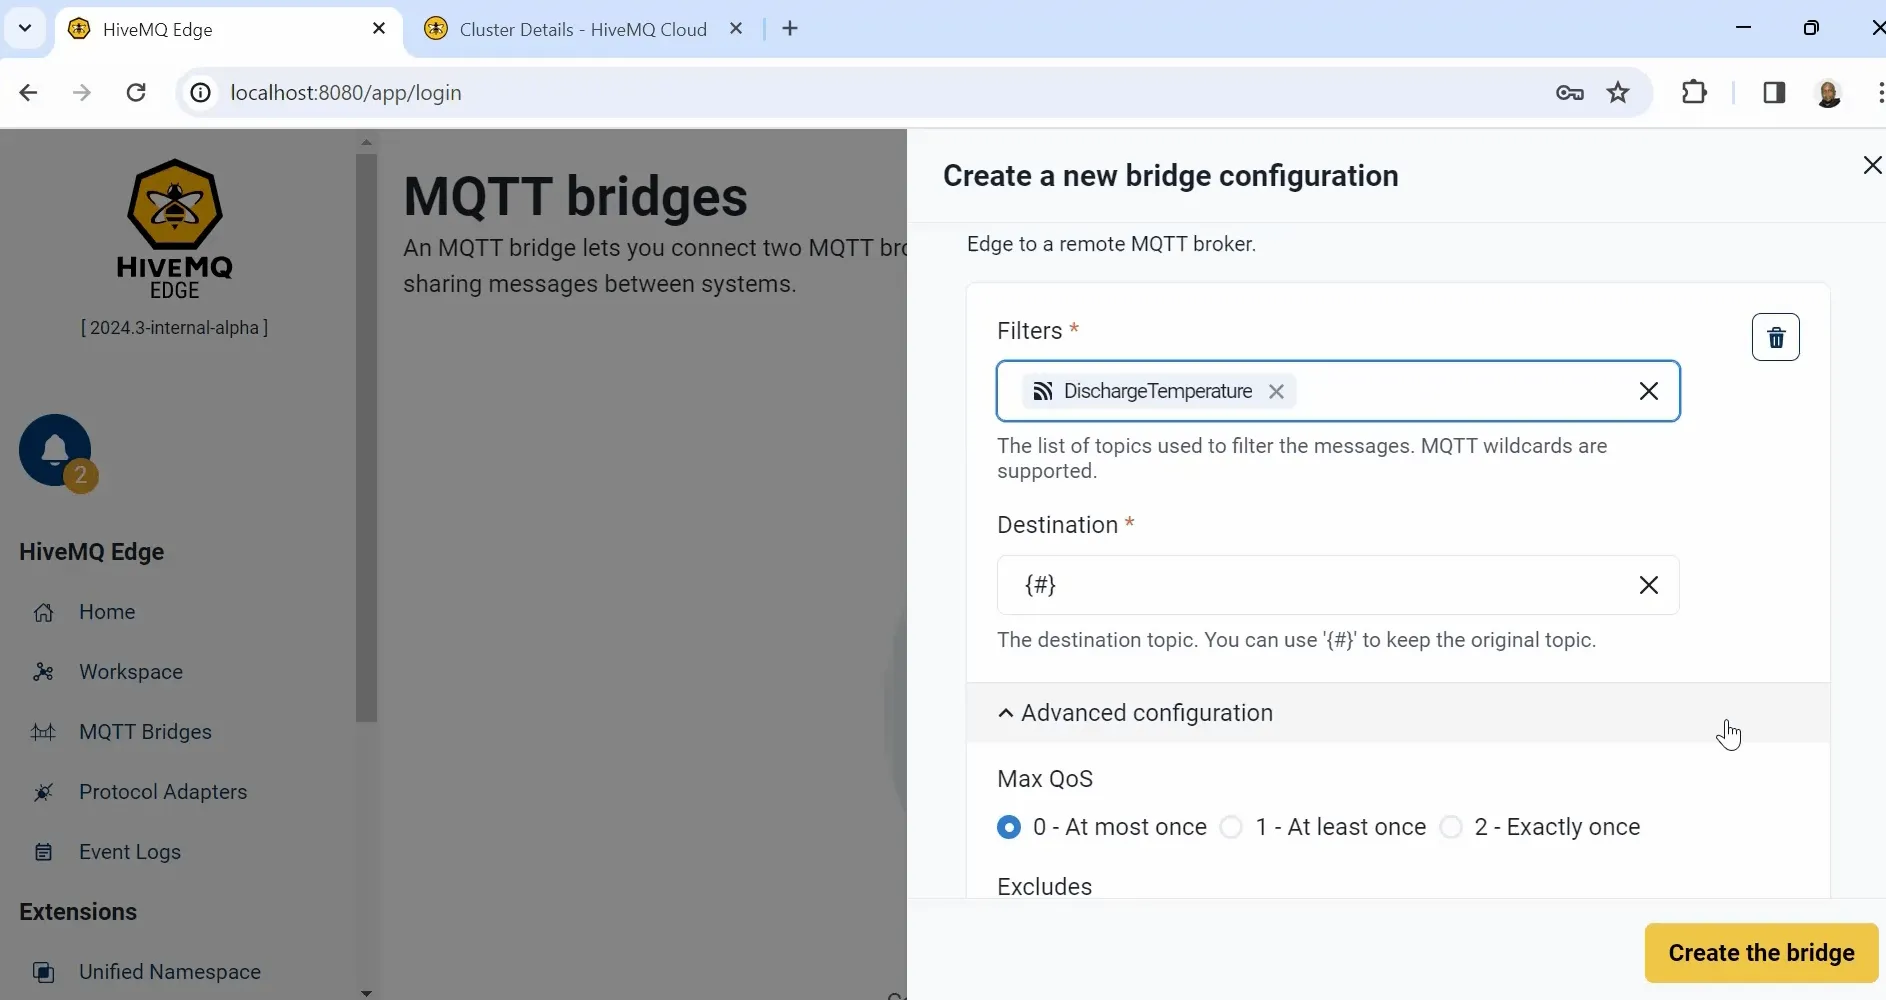 MQTT Bridges in HiveMQ Edge